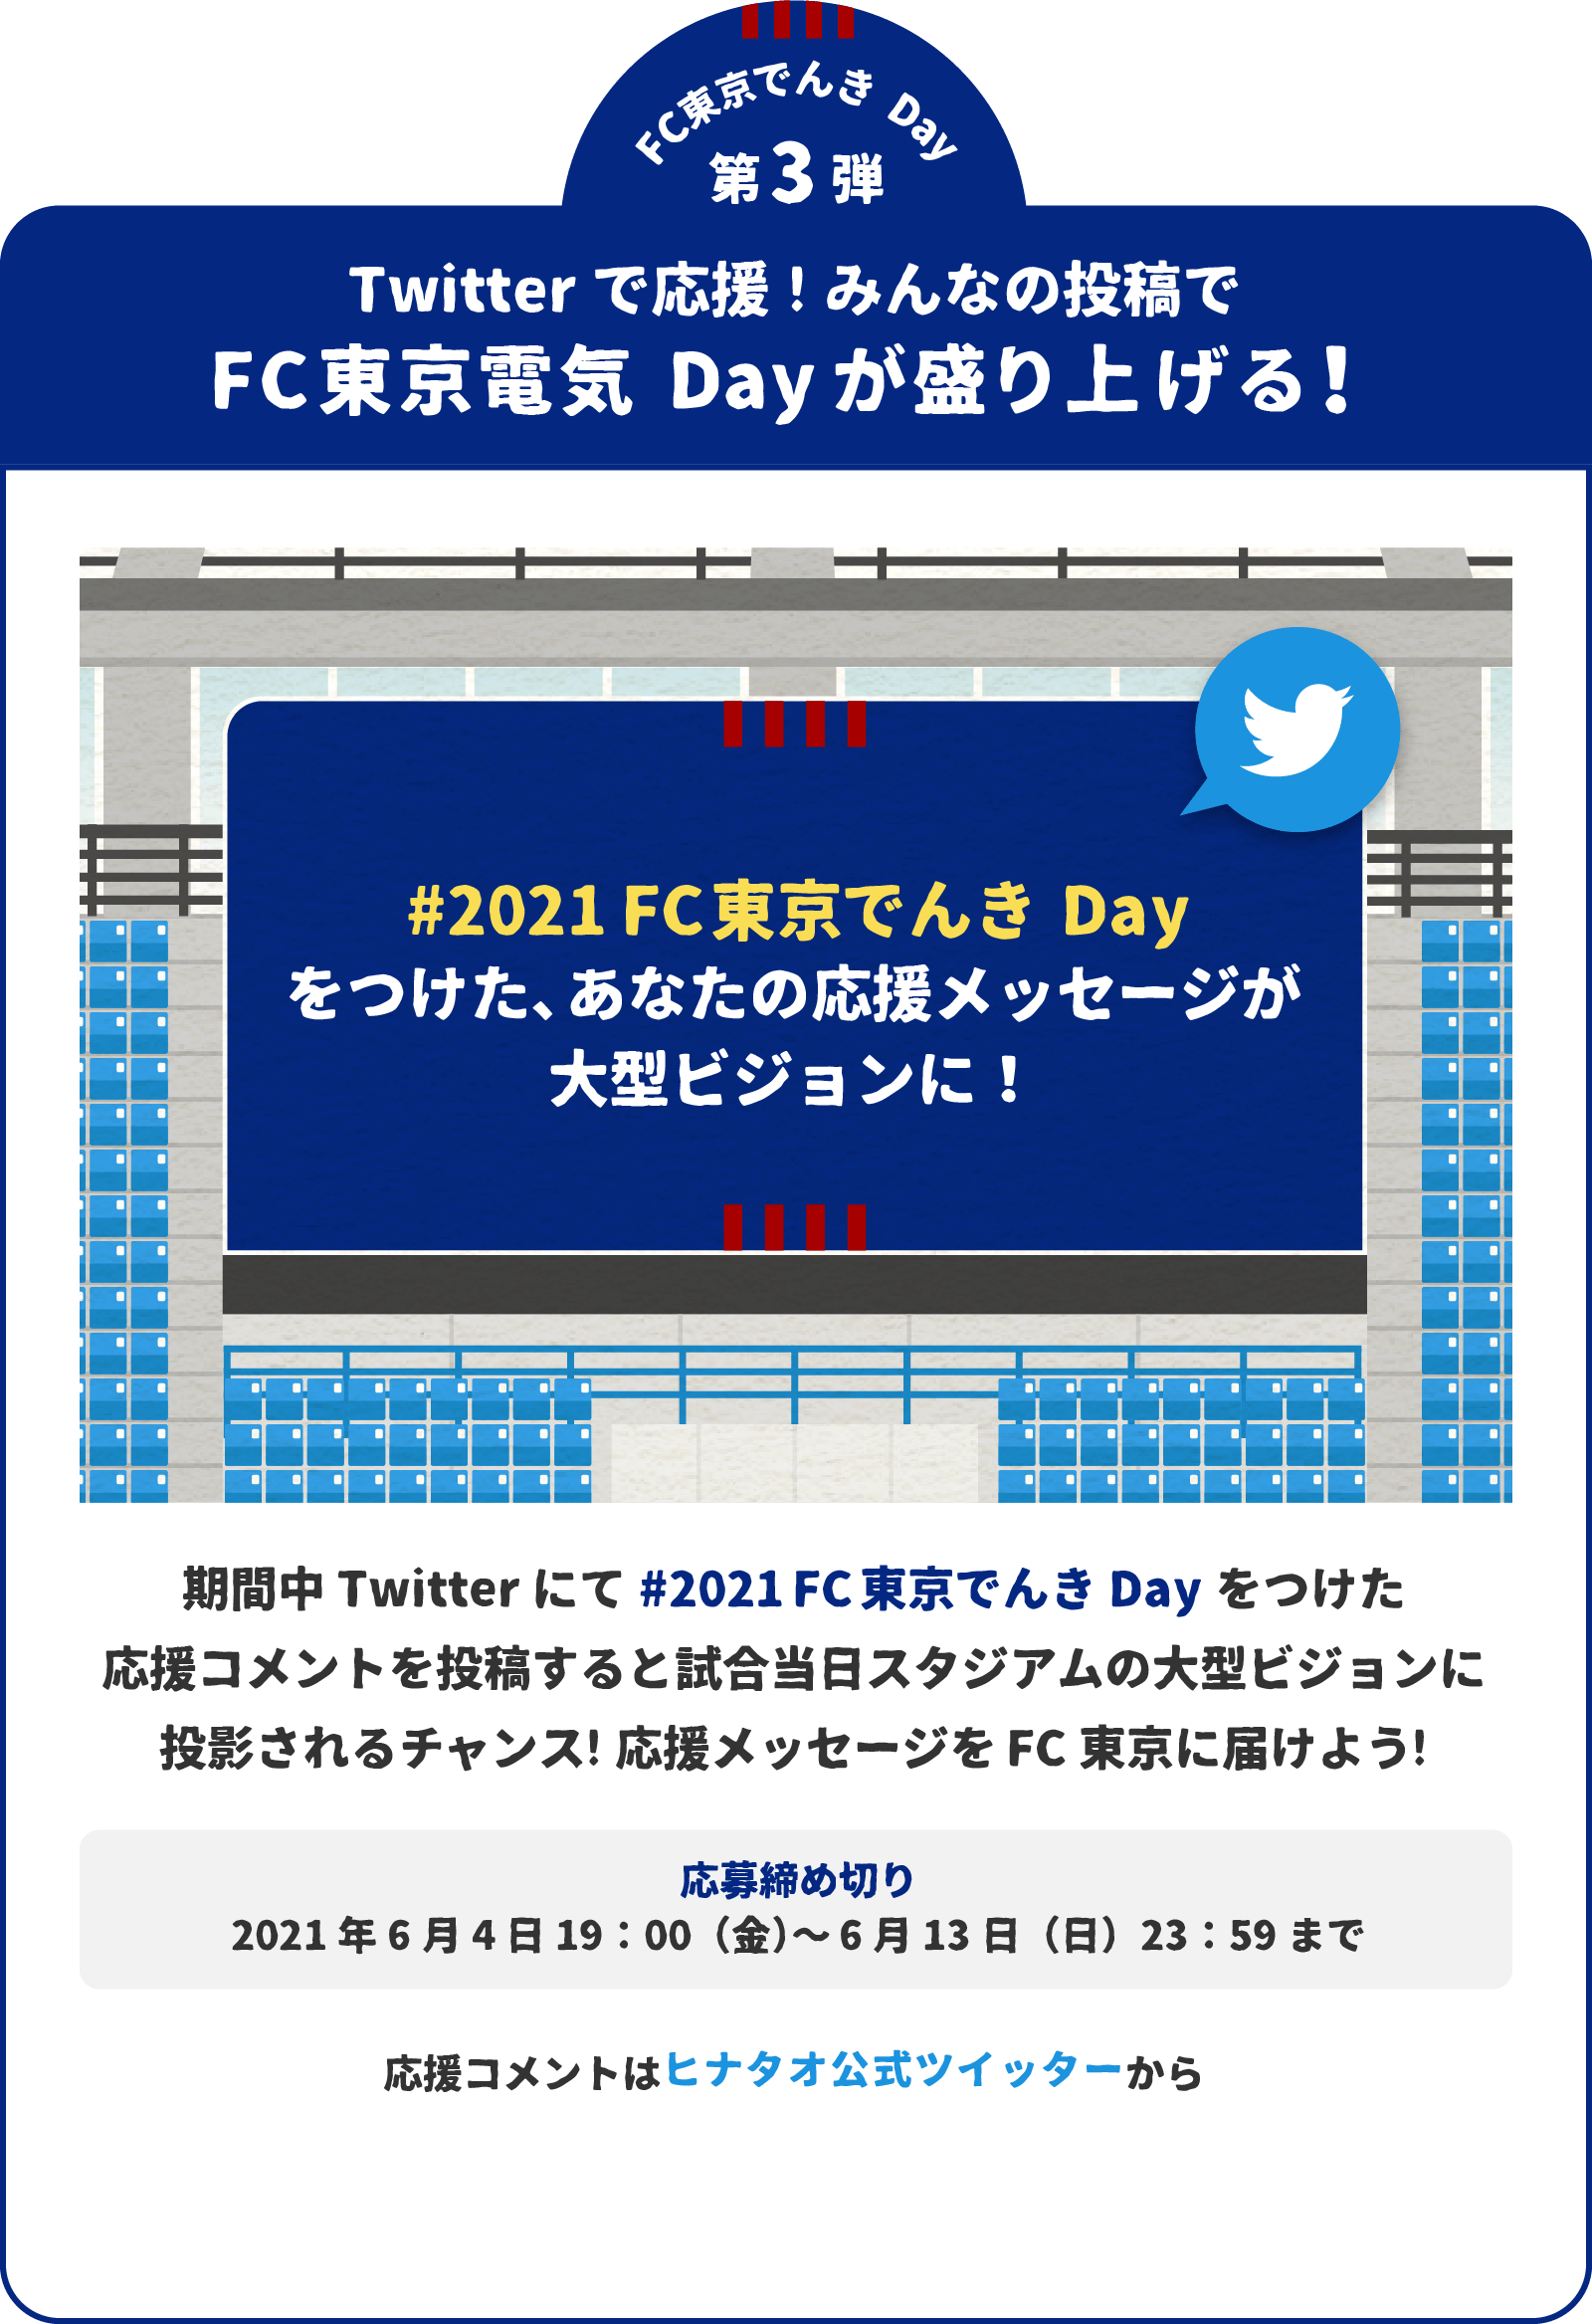 C東京でんきDay 第3弾 Twitterで応援!みんなの投稿でFC東京電気Dayが盛り上げる！